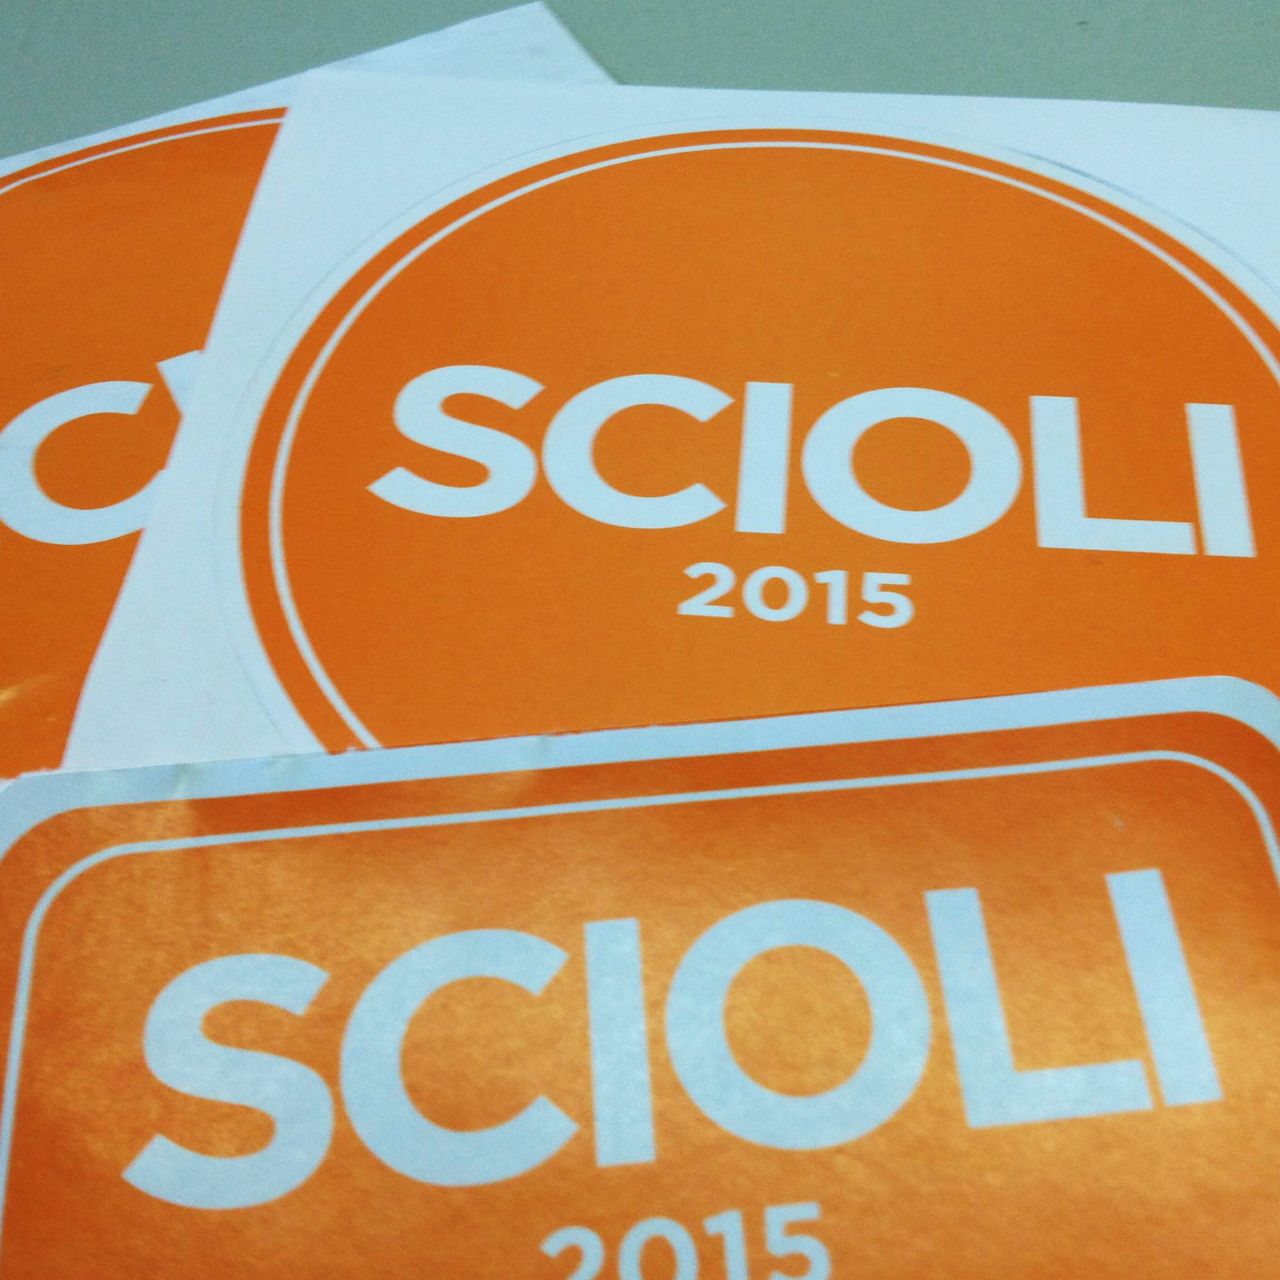 Tras las elecciones, aparecen calcos impulsando la candidatura de Scioli 2015